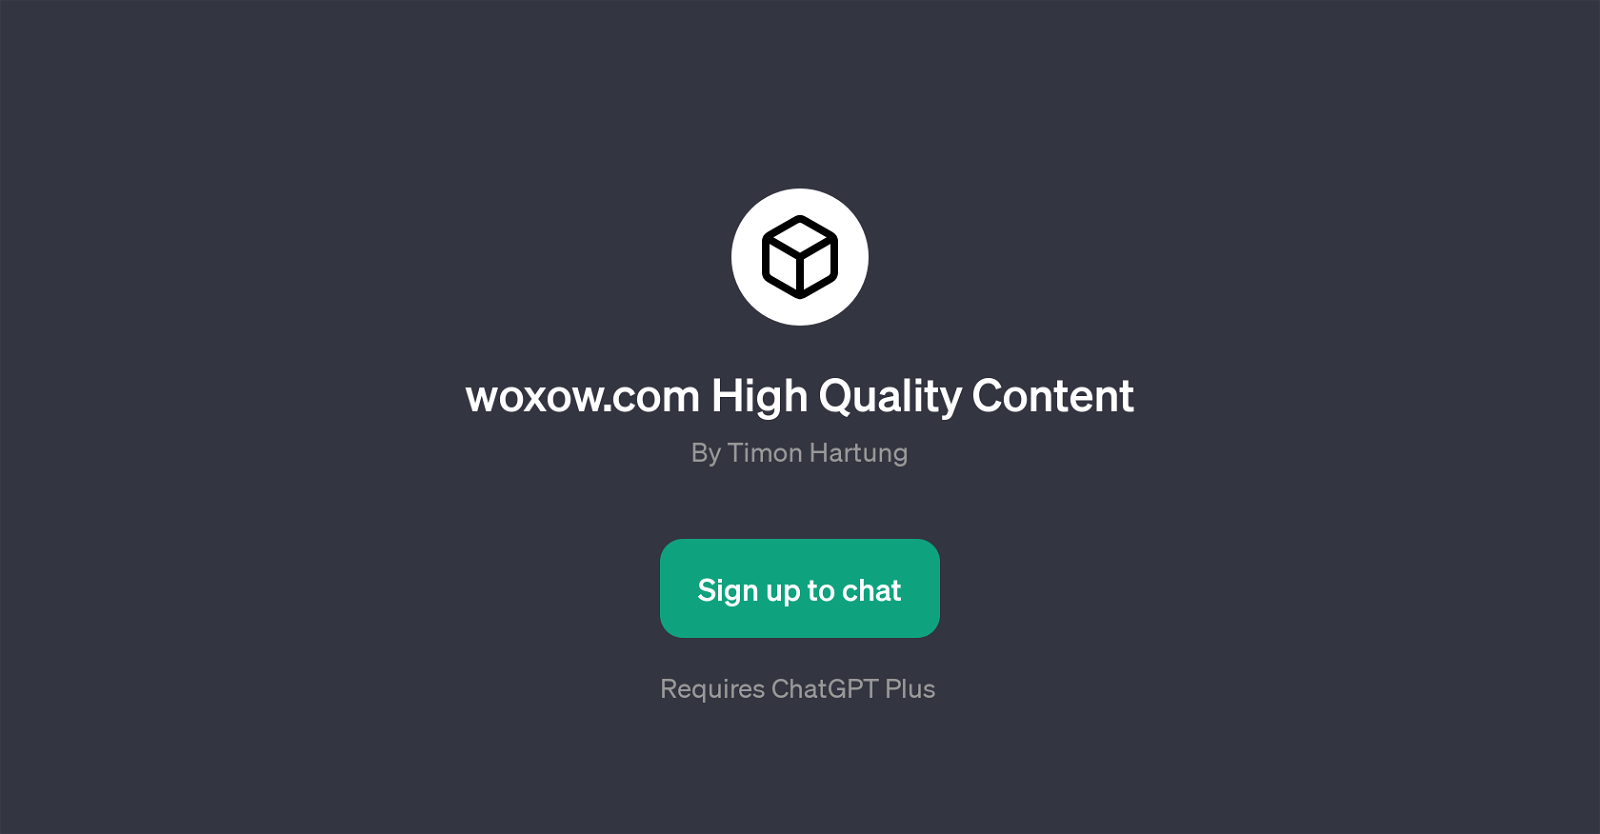 woxow.com High Quality Content website